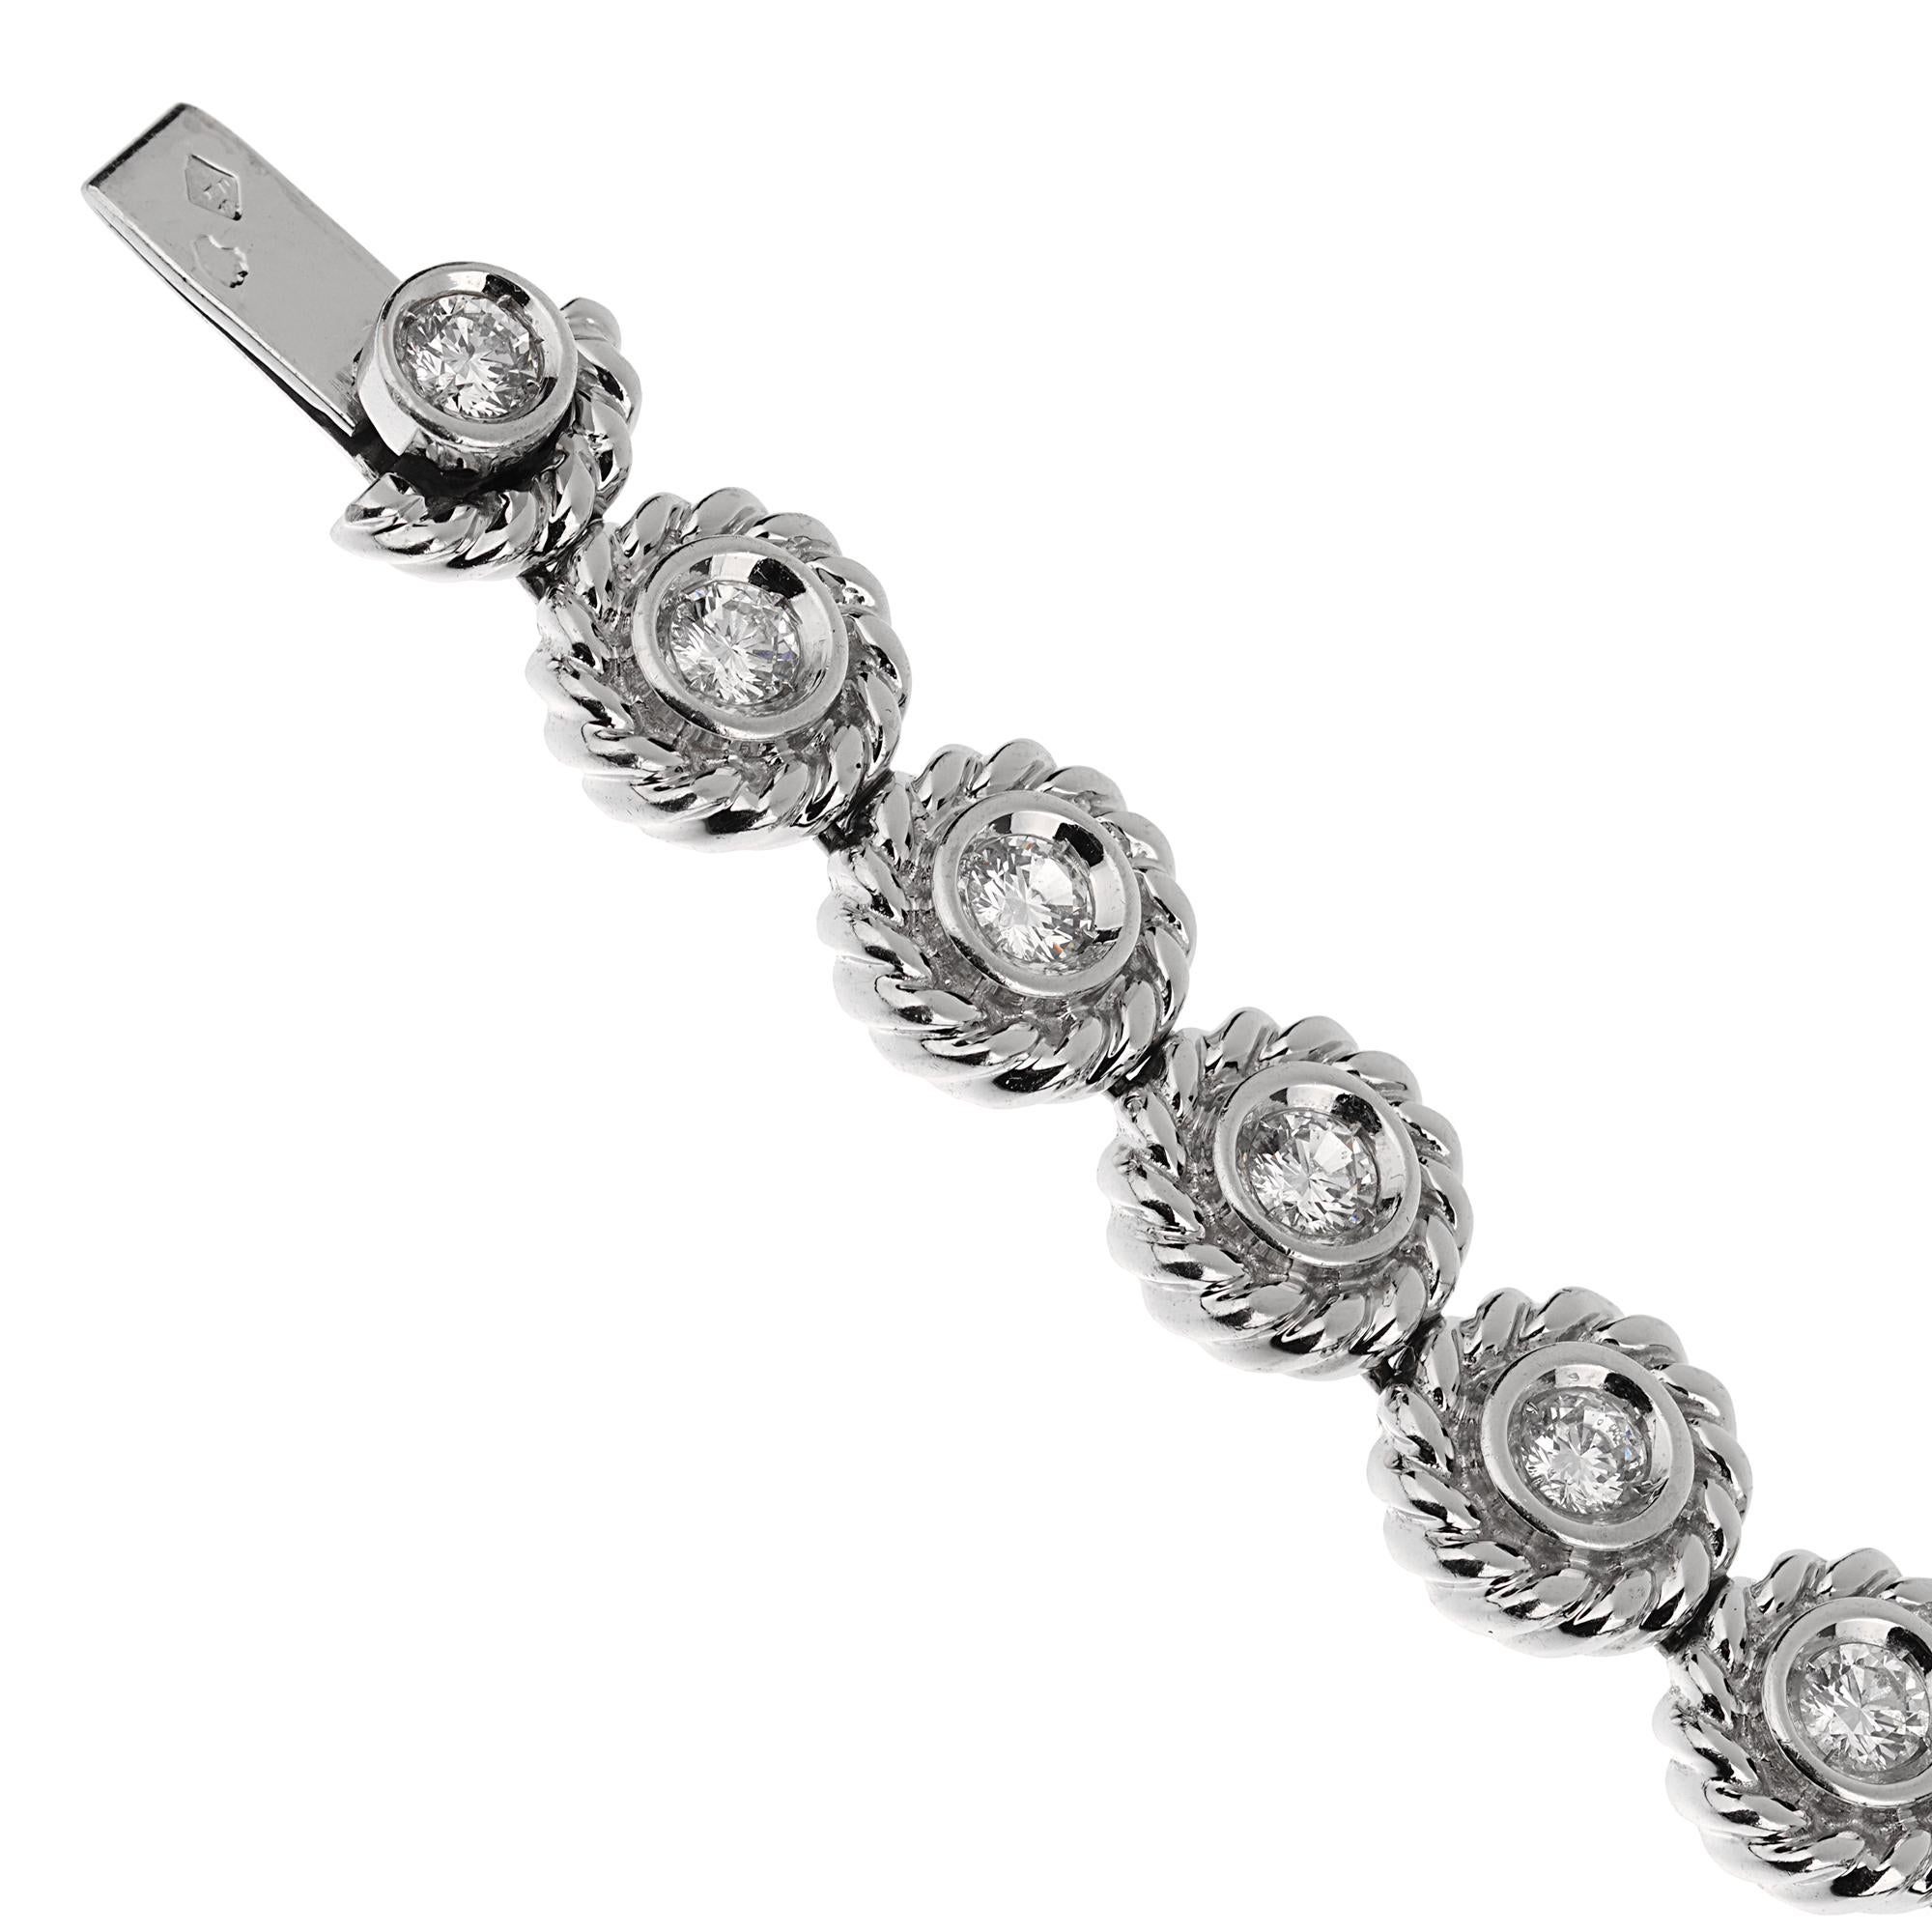 Un incroyable bracelet de tennis Chanel mettant en valeur 3ct appx des plus beaux diamants Chanel d'origine, sertis dans un motif de fleur en or blanc 18k. Entièrement signé et poinçonné. 

Le bracelet est livré avec une garantie d'authenticité